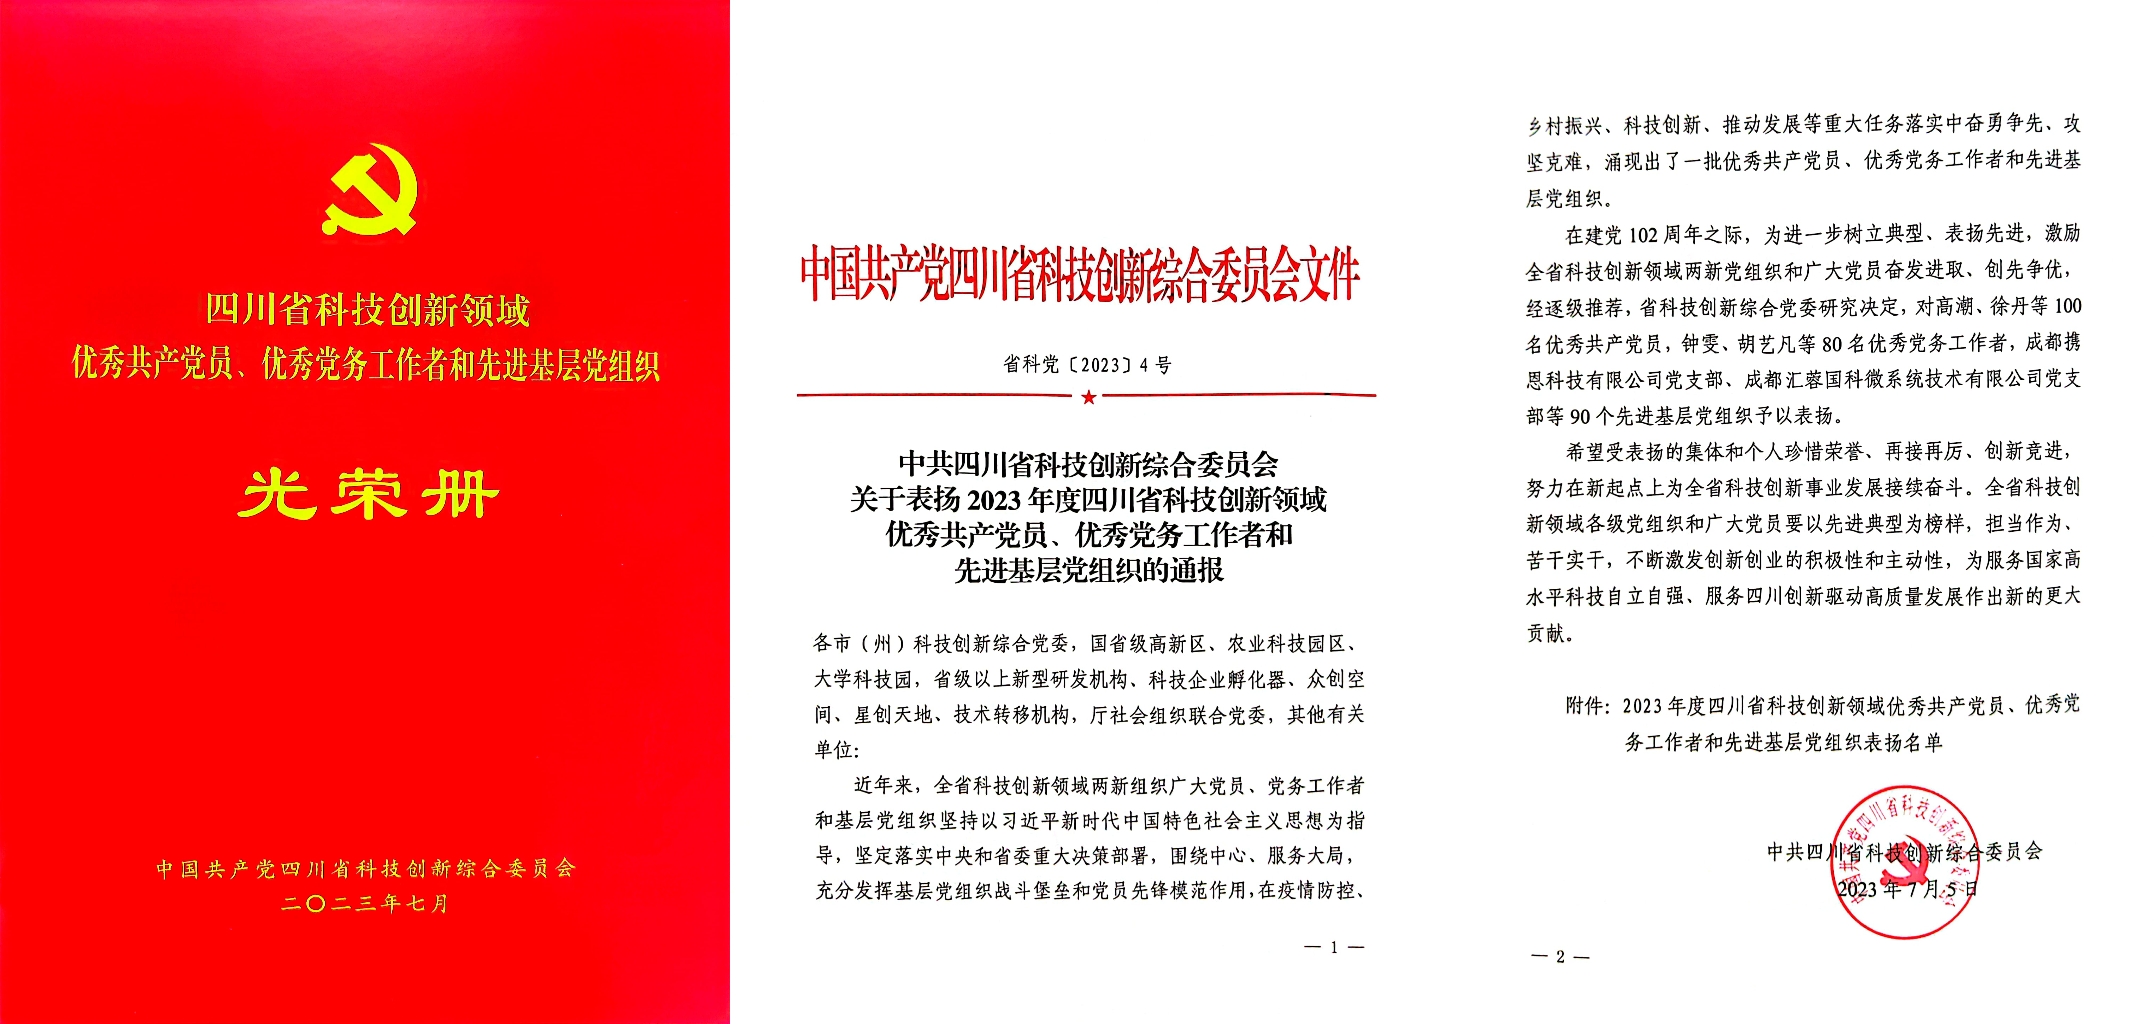 四川君和环保党支部被评为“2023年度四川省科技创新领域‘先进基层党组织’”